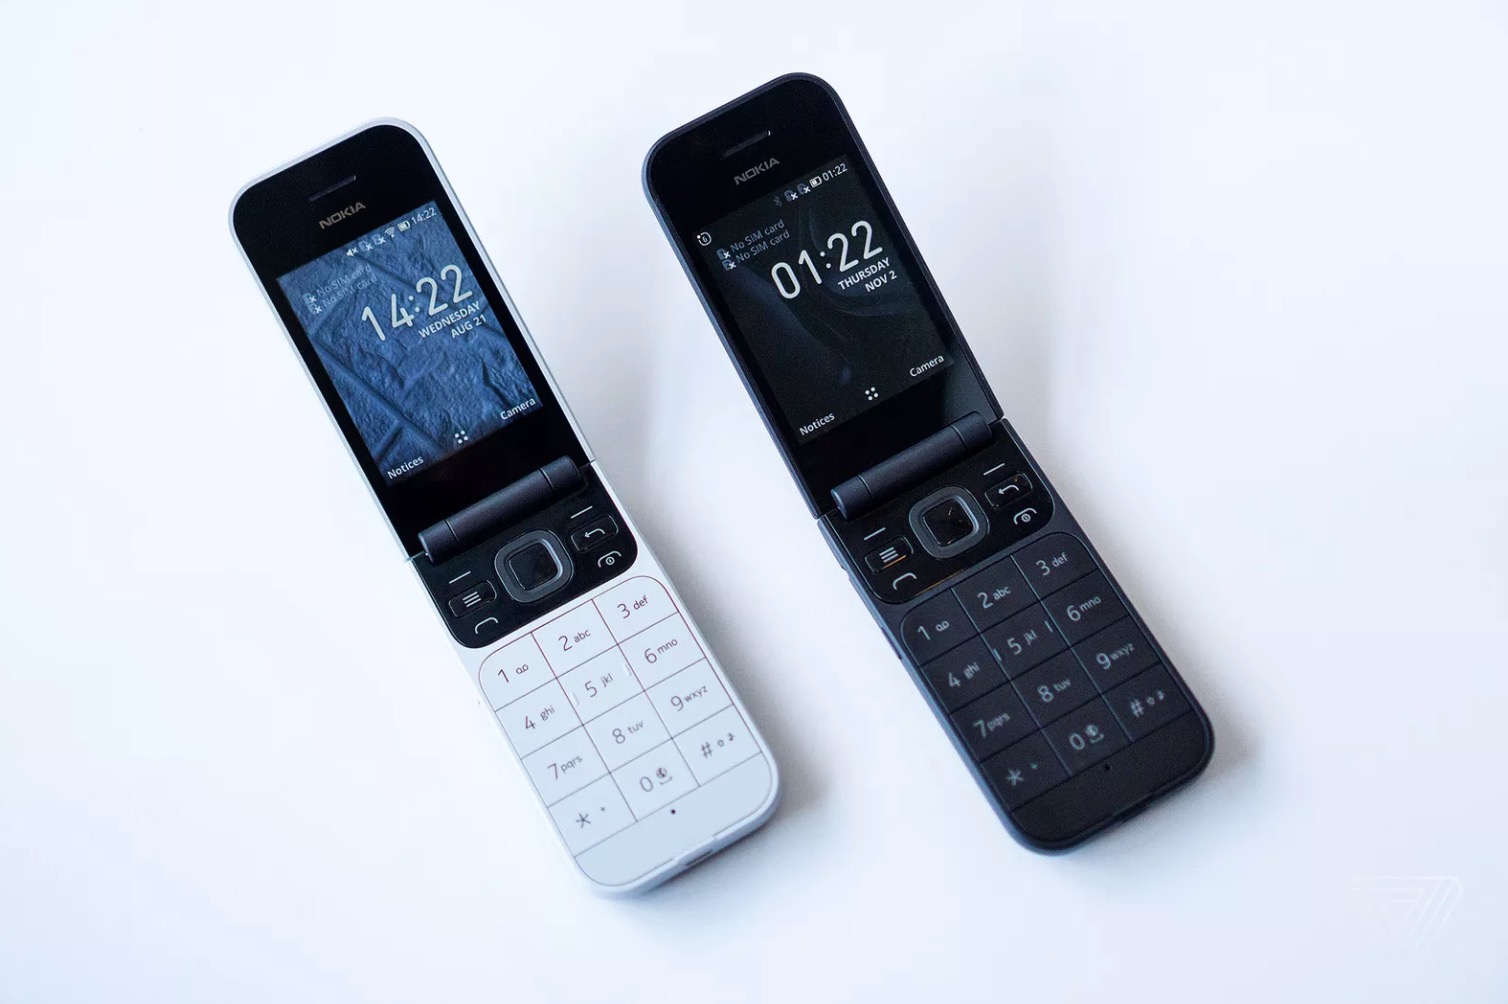 [IFA 2019] HMD Global hồi sinh Nokia 2720 nắp
gập từ 10 năm trước, giá 2.2 triệu